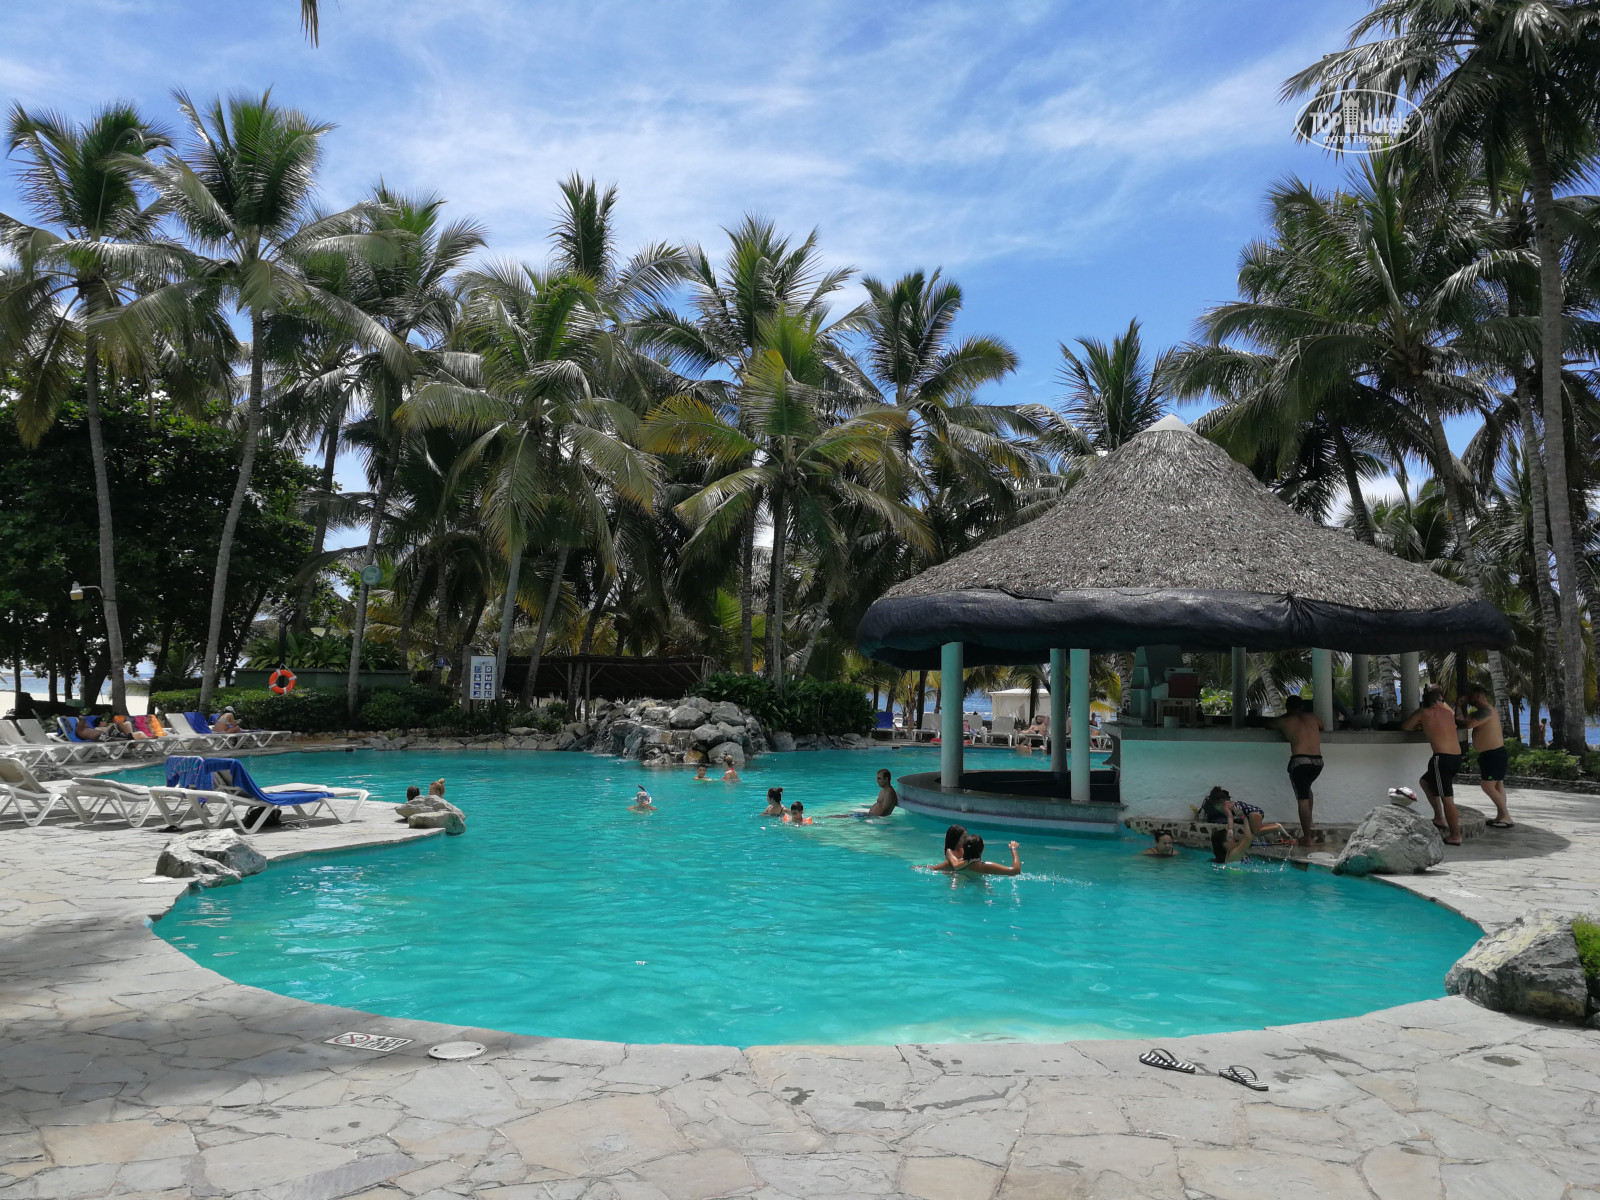 Costa caribe beach resort 3. Costa Caribe Beach Hotel Resort 4 Венесуэла. Costa Caribe Beach Hotel & Resort 3*.